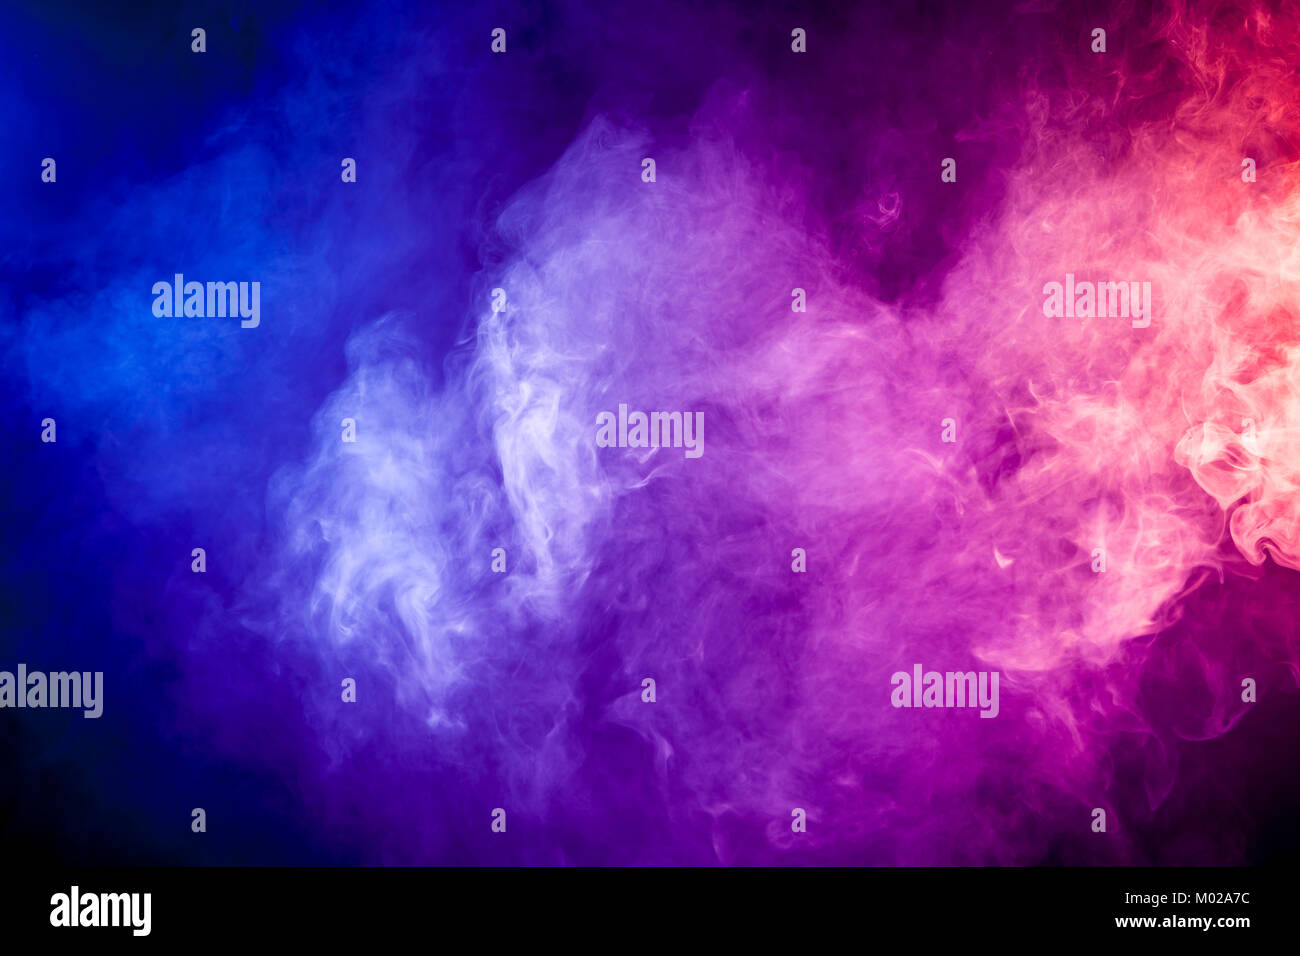 Blau Pink Lila Vape Rauch Auf Schwarzem Hintergrund Isoliert Stockfotografie Alamy